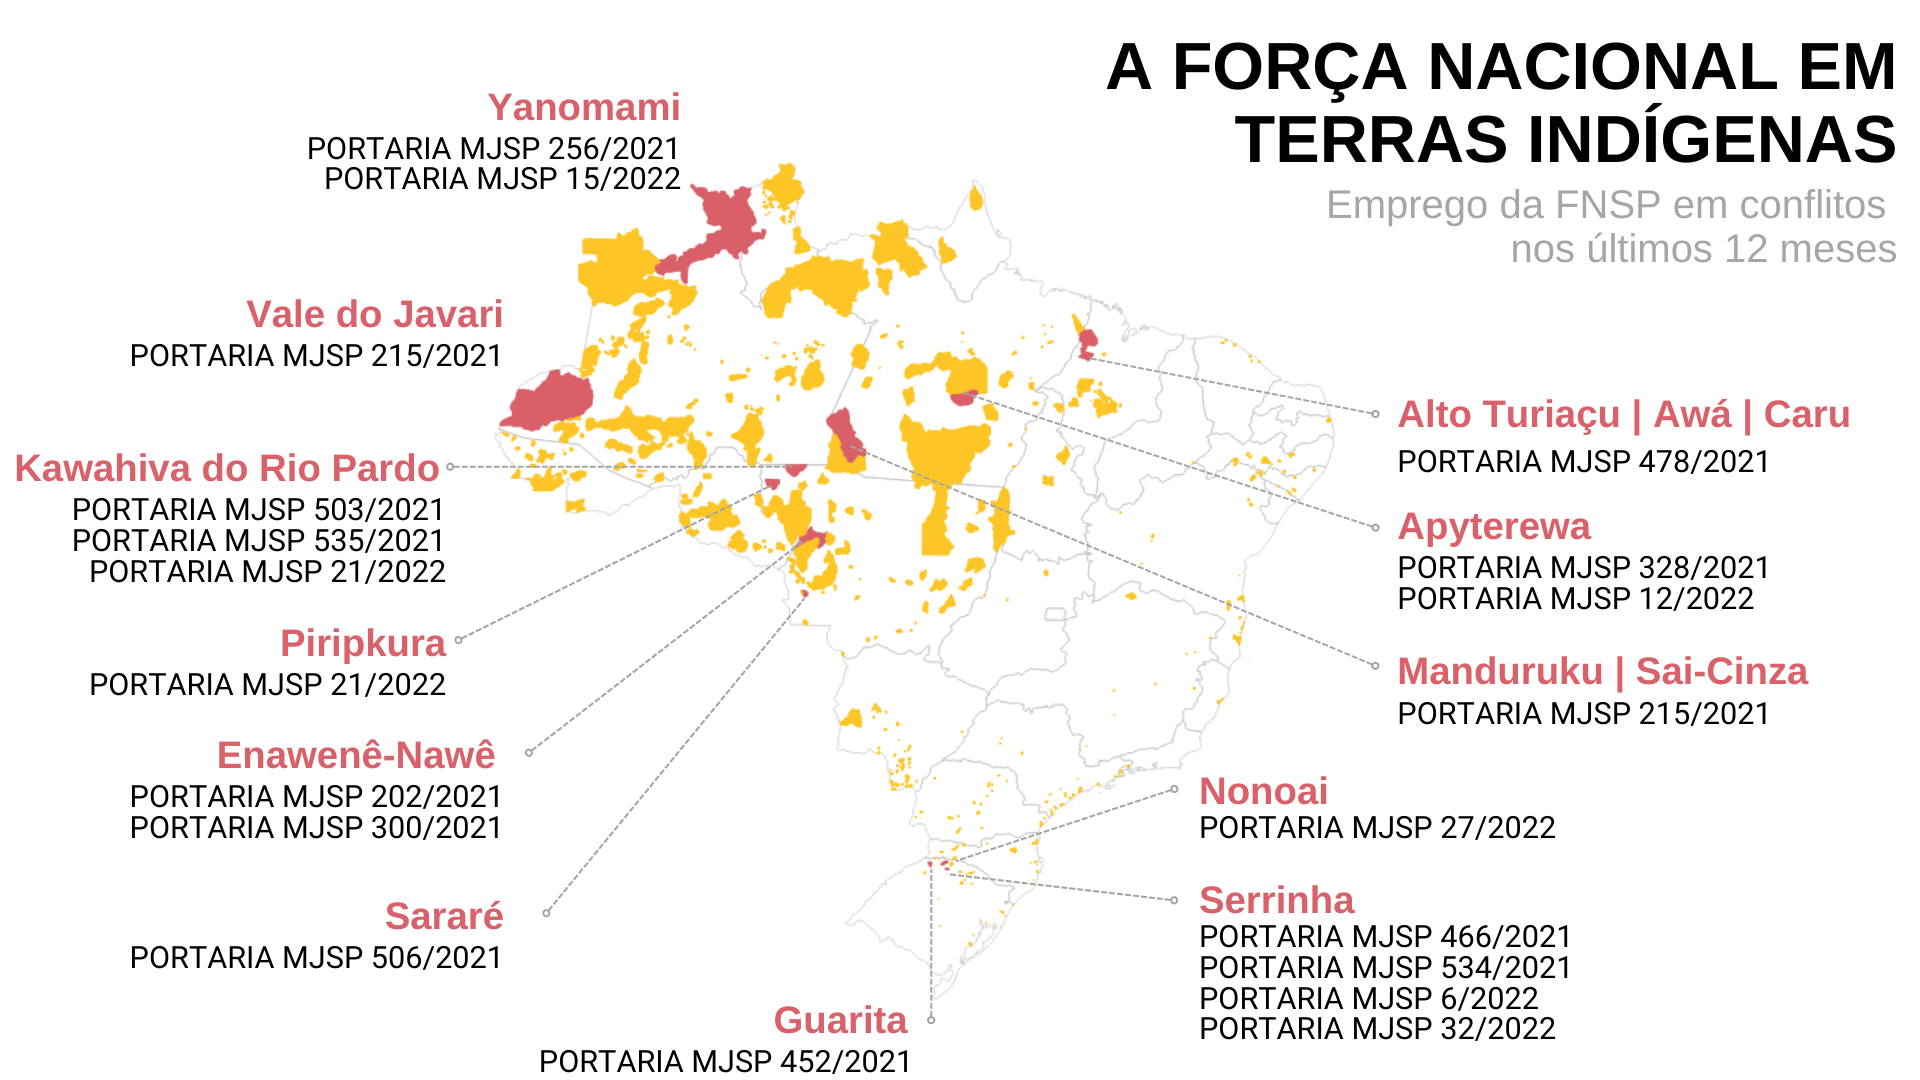 Mapa mostra as terras indígenas para as quais houve emprego da Força Nacional de Segurança Pública 